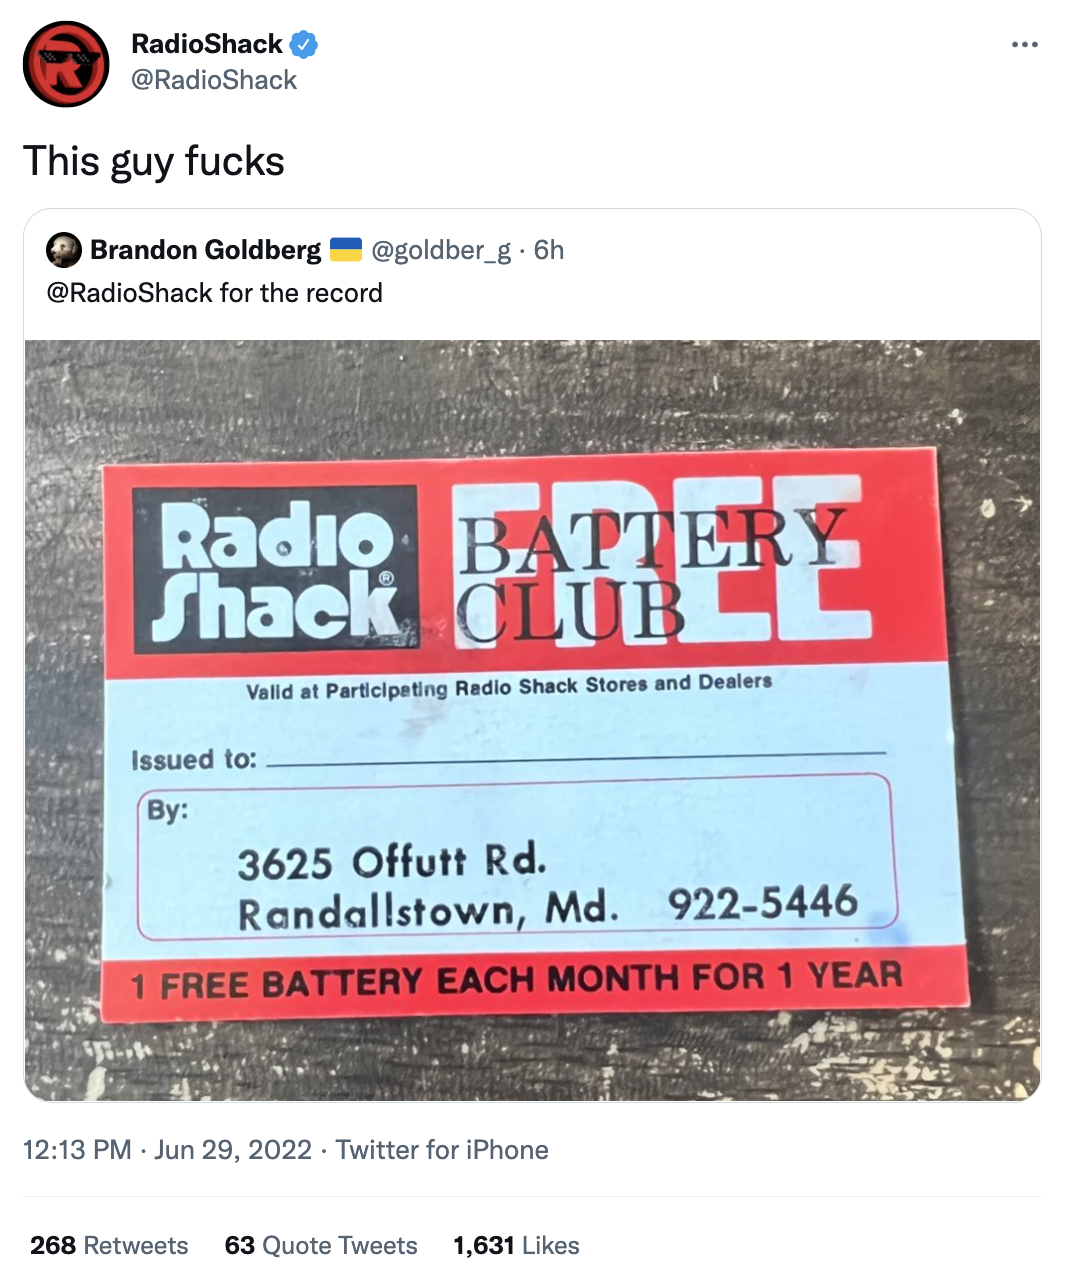 RadioShack "This Guy Fucks" Tweet